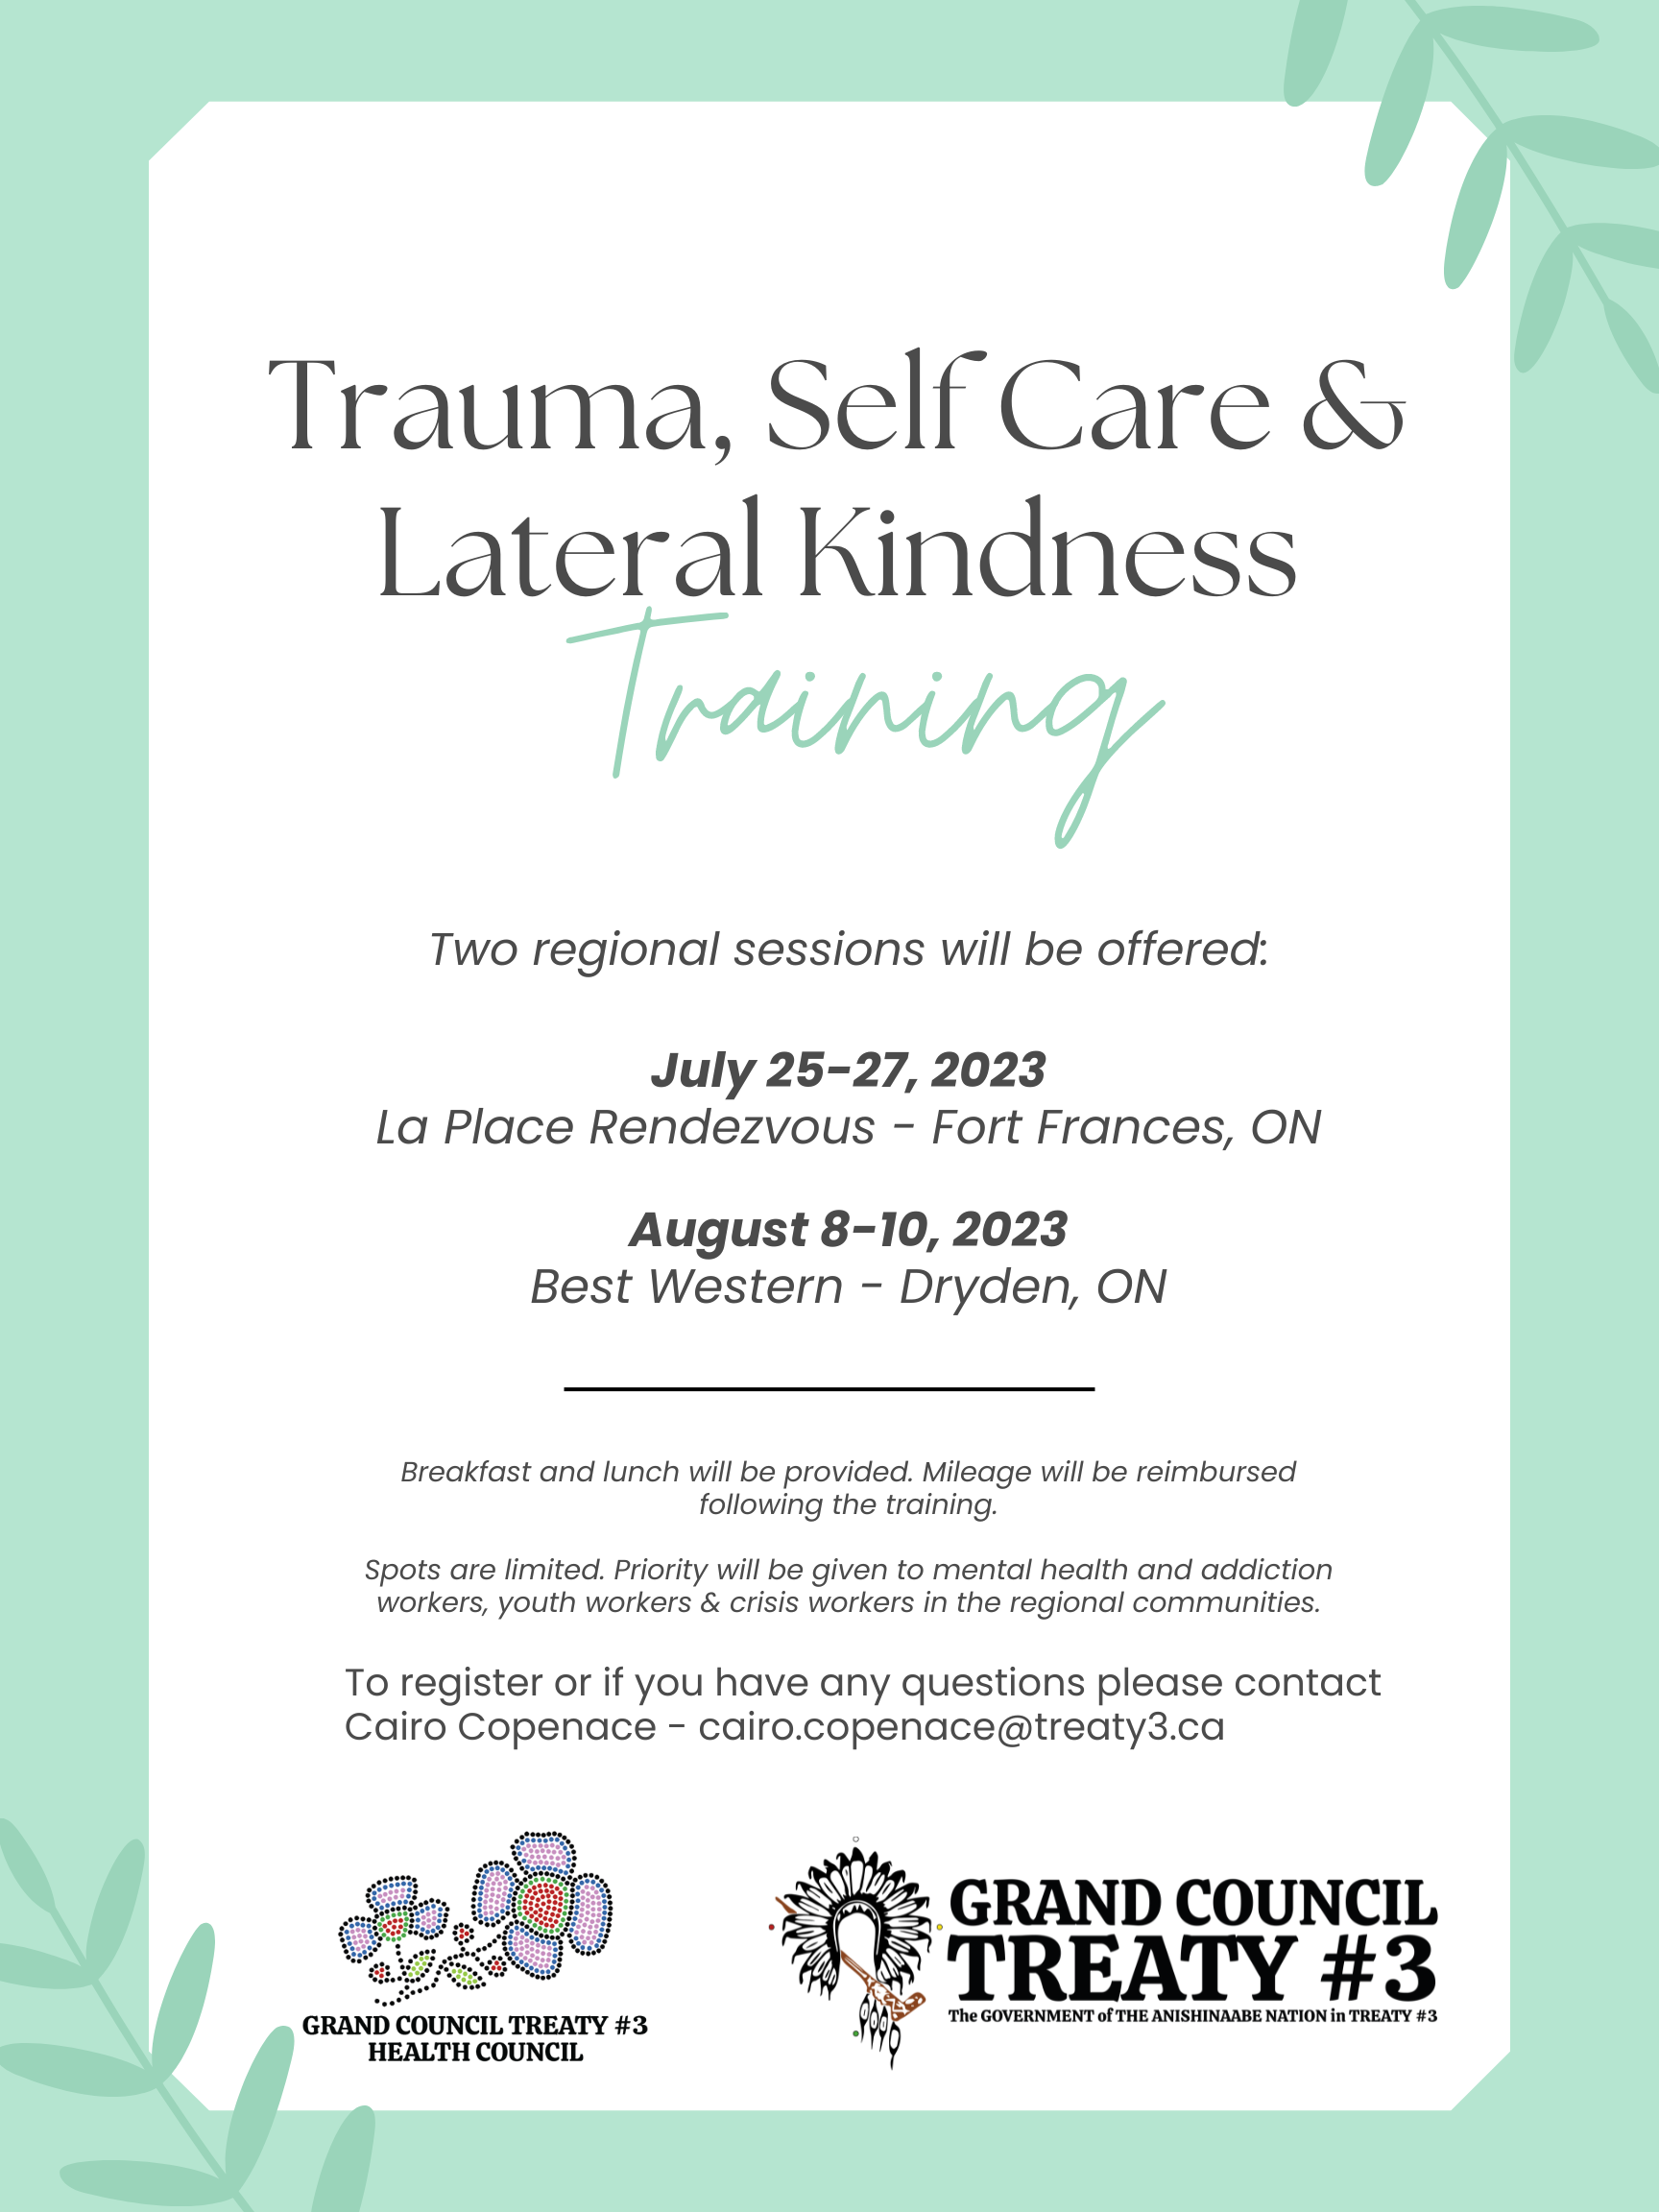 Trauma, Self Care & Lateral Kindness Training